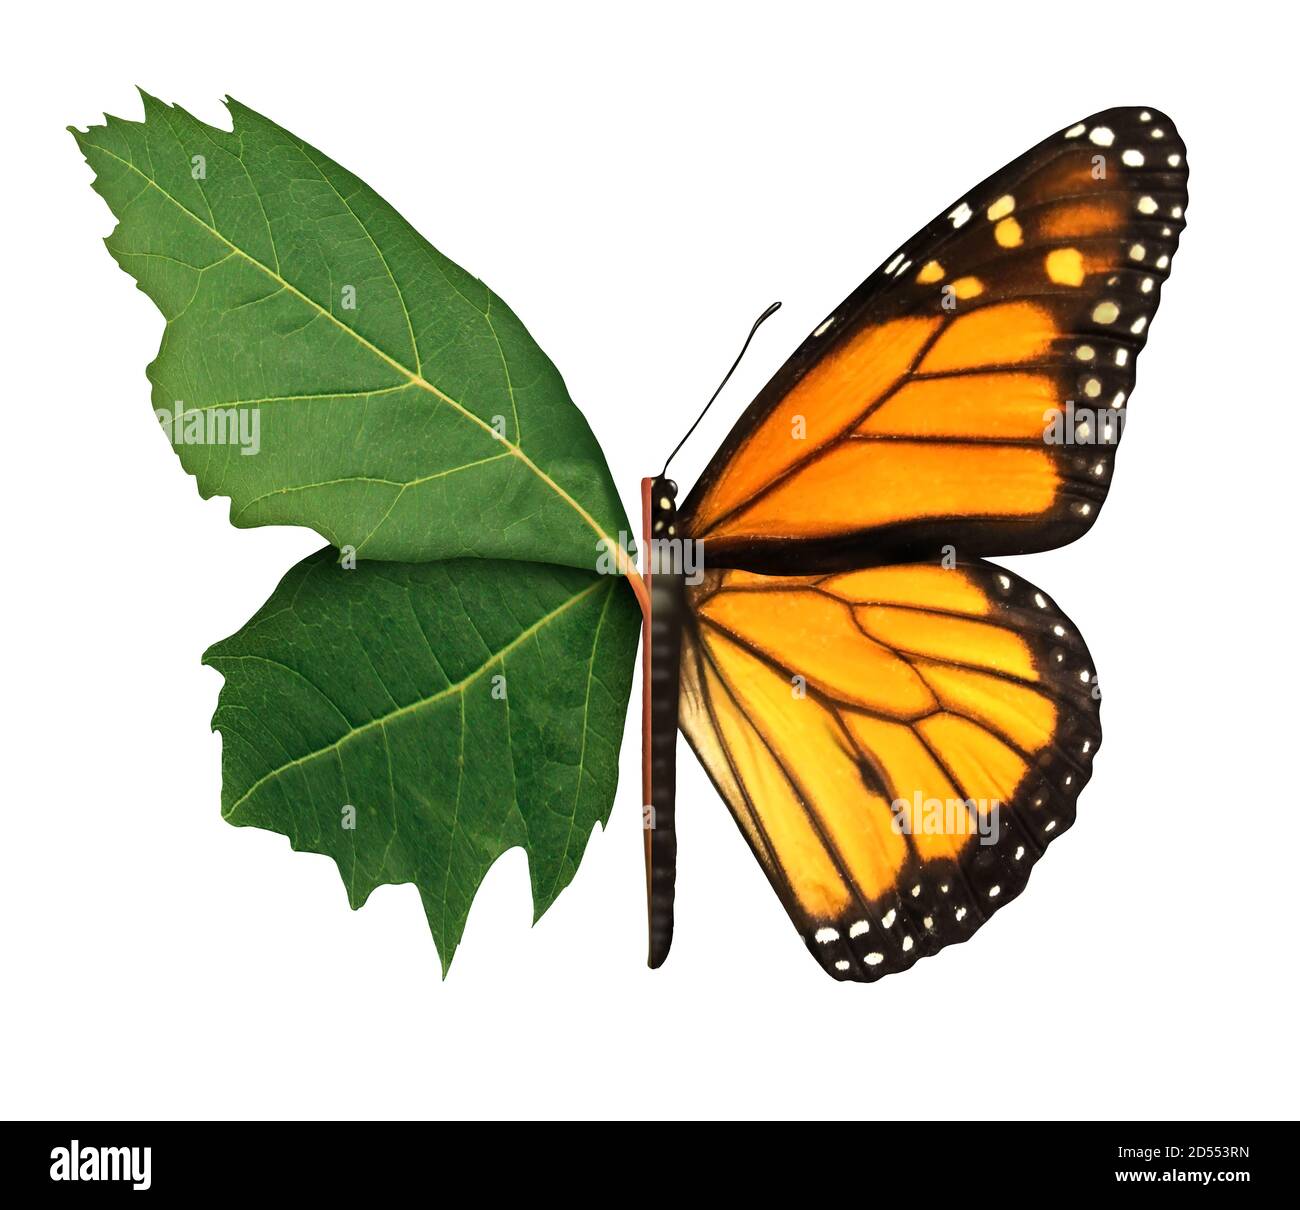 Habitat Symbol und Ökologie Konzept als Blatt und Schmetterling isoliert auf einem weißen Hintergrund in einem 3D-Illustration-Stil. Stockfoto